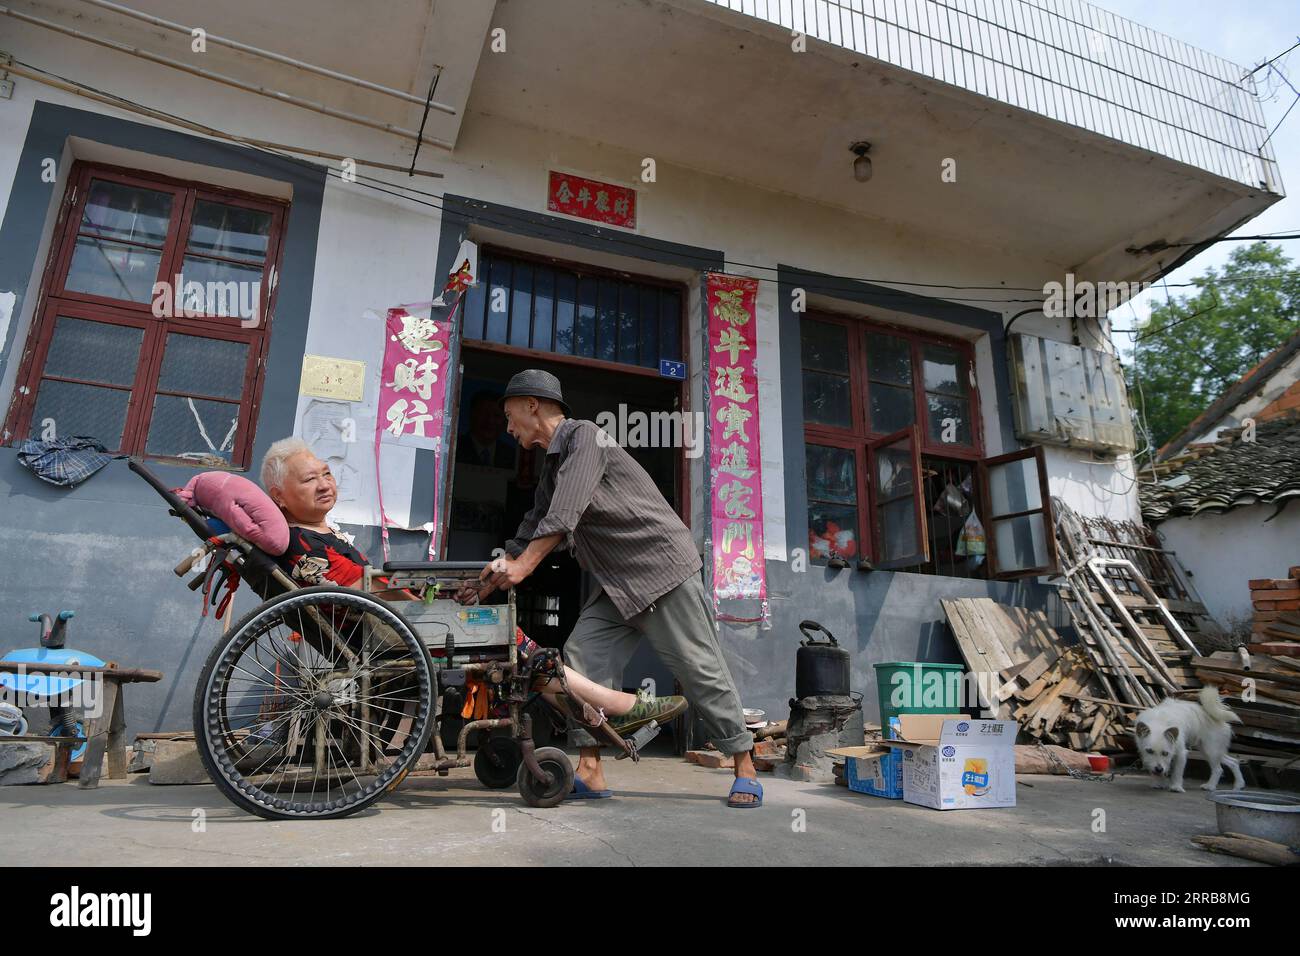 210908 -- NANCHANG, 8 de septiembre de 2021 -- Luo Anmin lleva a su esposa al patio para bañarse un poco de sol en la aldea Xuluo del condado de Nanchang, provincia de Jiangxi, al este de China, 5 de septiembre de 2021. Luo Anmin tiene 76 años. En 2008, su esposa Wan Zhaolian sufrió de cáncer cerebral y desafortunadamente perdió el conocimiento, pero Luo nunca se rindió. Habló con su esposa y le dio masajes todos los días, con la esperanza de que pueda estar mejor algún día. Después de tres años de cuidado amoroso, ocurrió el milagro. En 2011, Wan Zhaolian recuperó la conciencia, lo que le dio a Luo más esperanza, aunque todavía no podía hablar y caminar. Luo dijo h Foto de stock